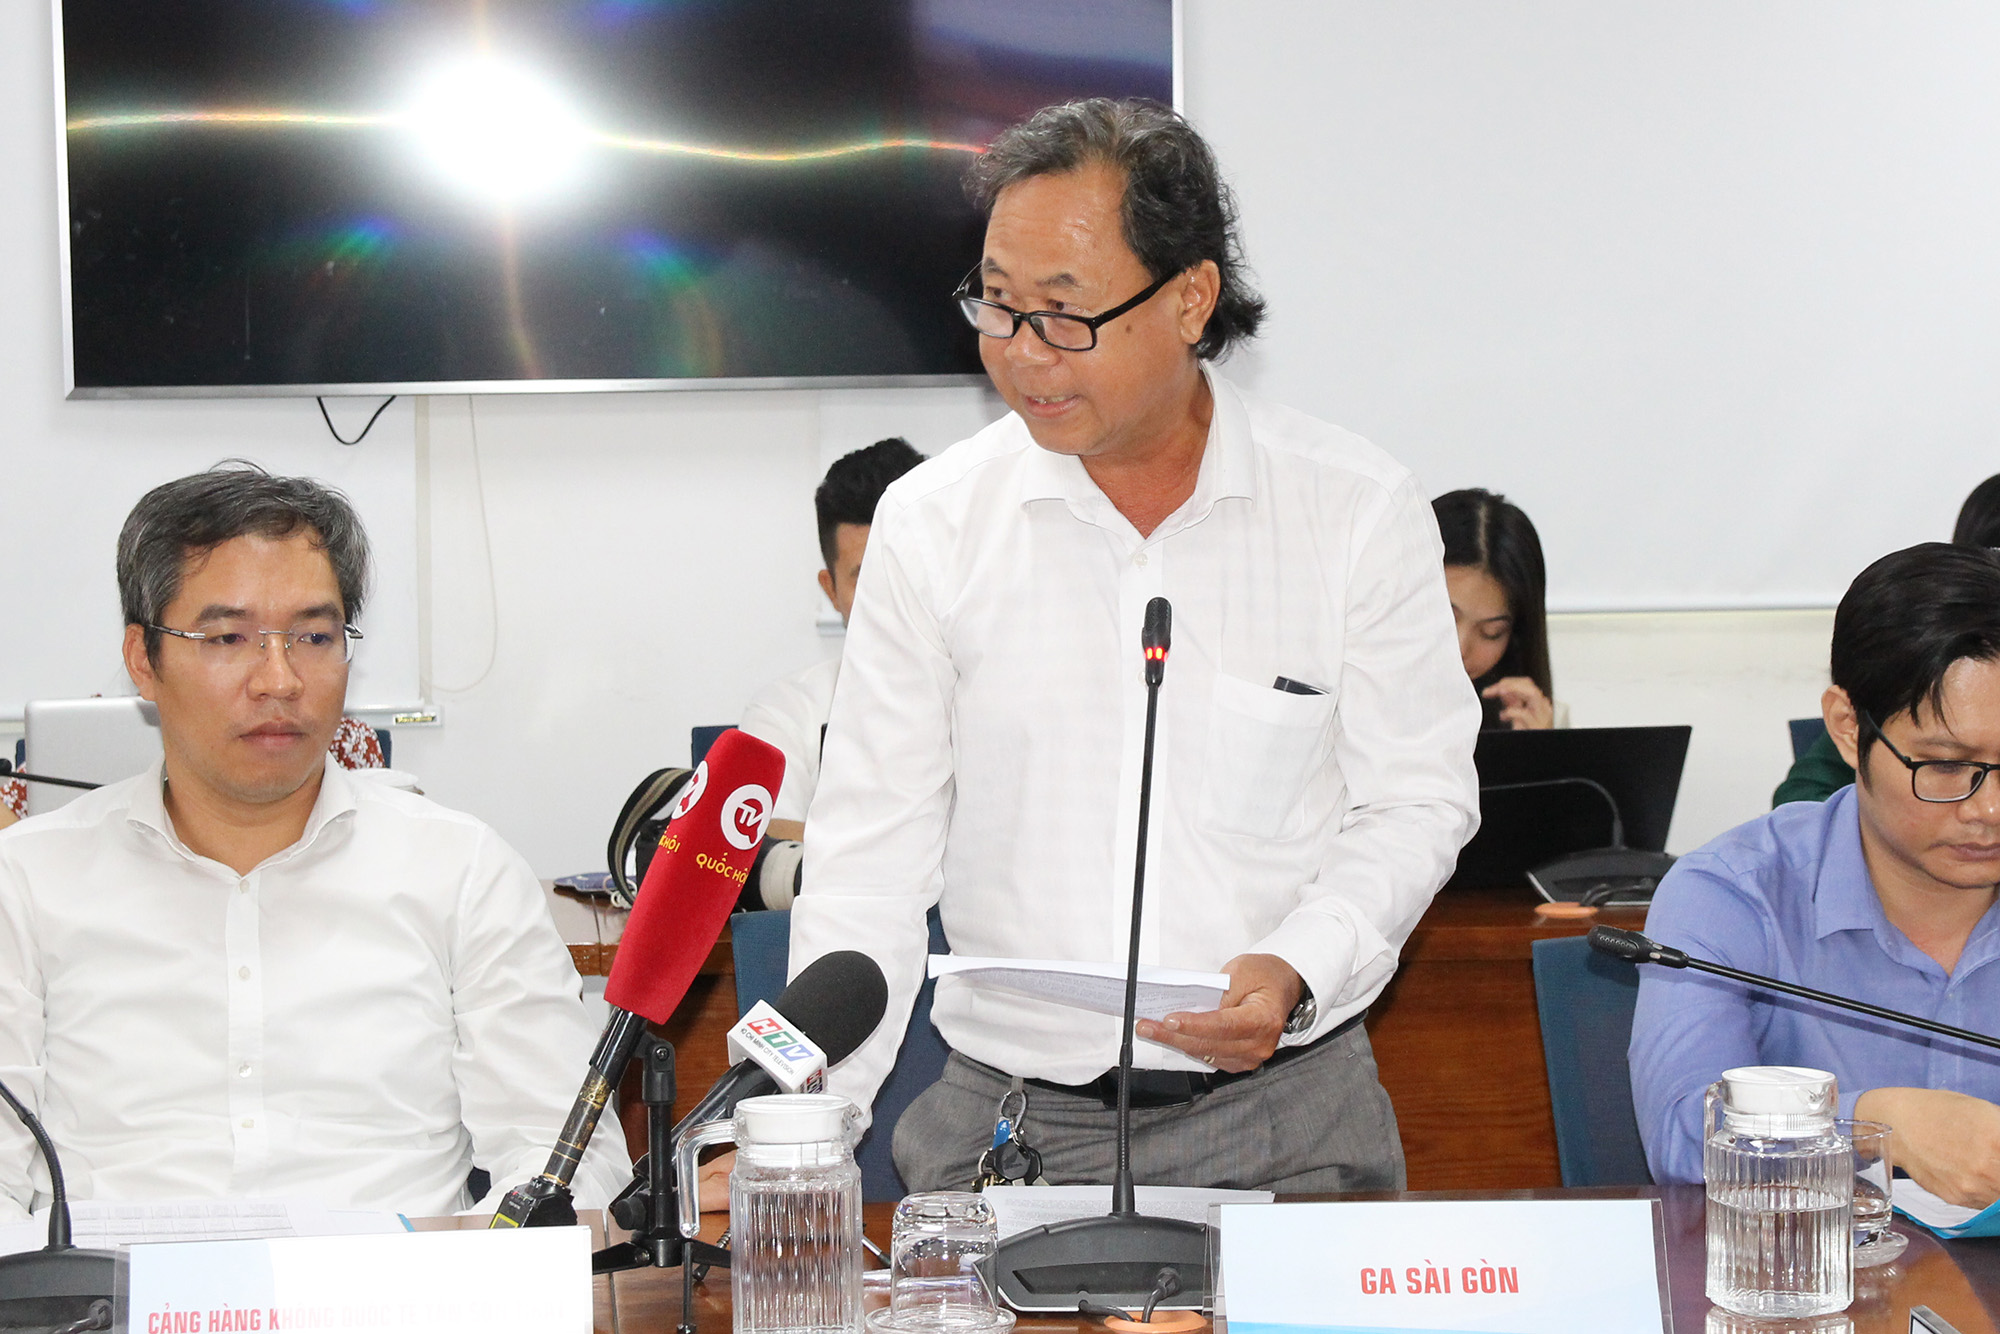 Đồng chí Nguyễn Huy Thông, Phó Trưởng Ga Sài Gòn phát biểu tại buổi họp báo (Ảnh: H.H).